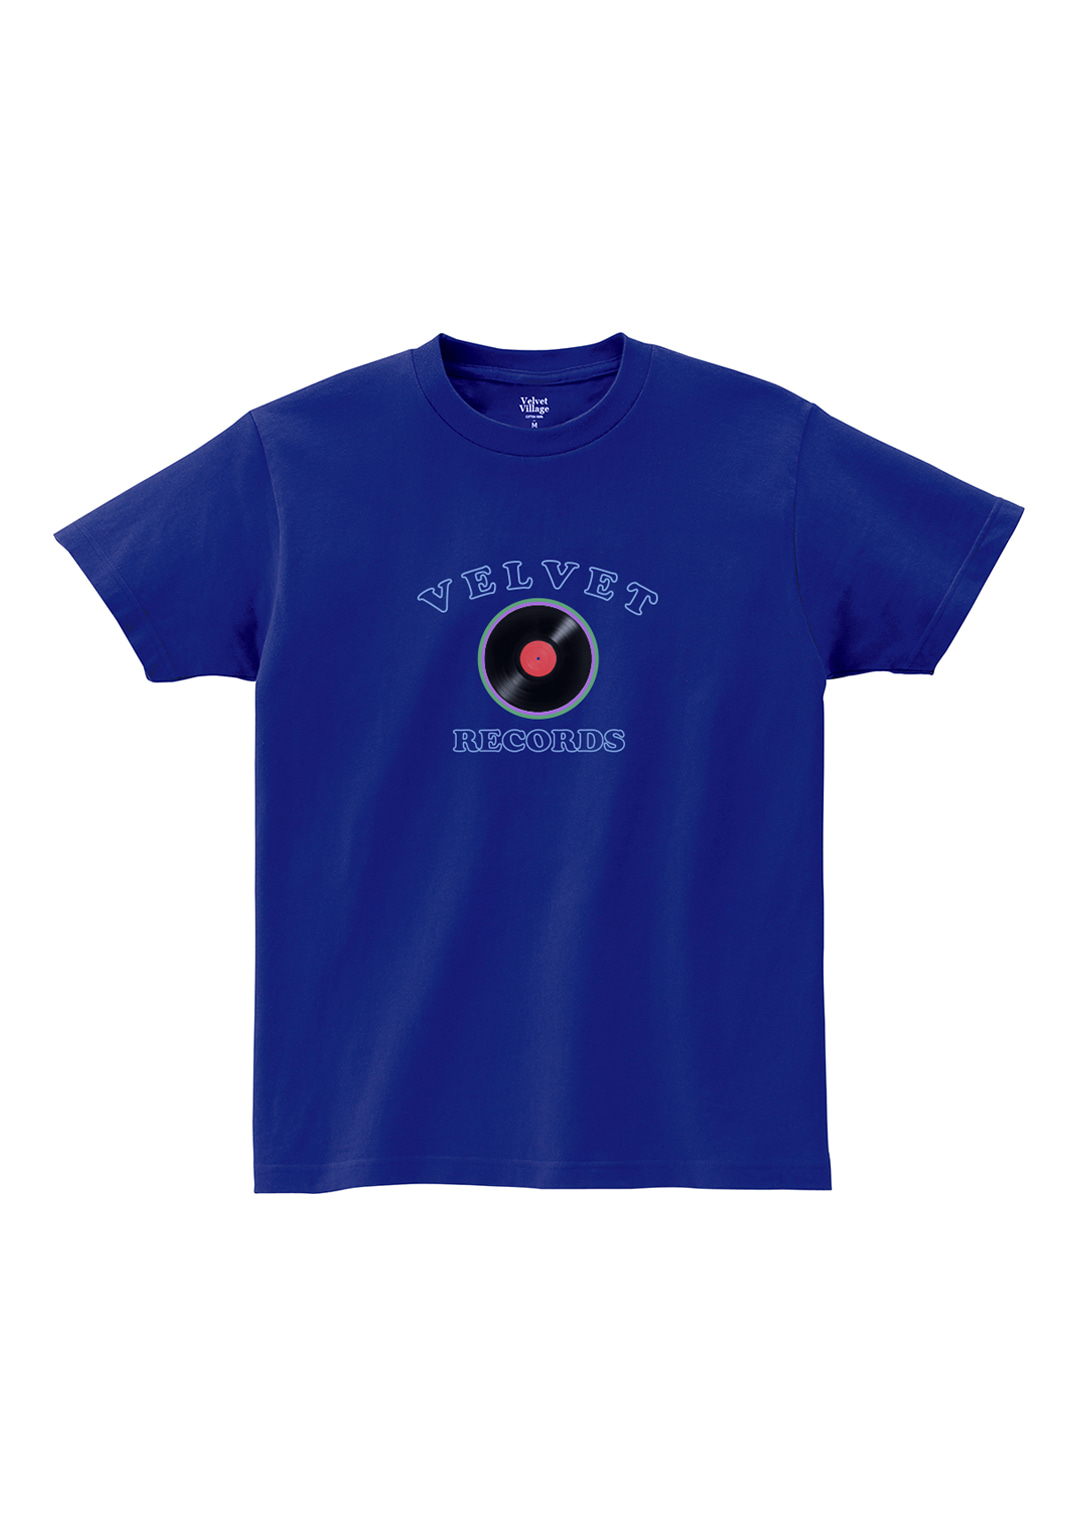 Records T-shirt (Deep Blue)